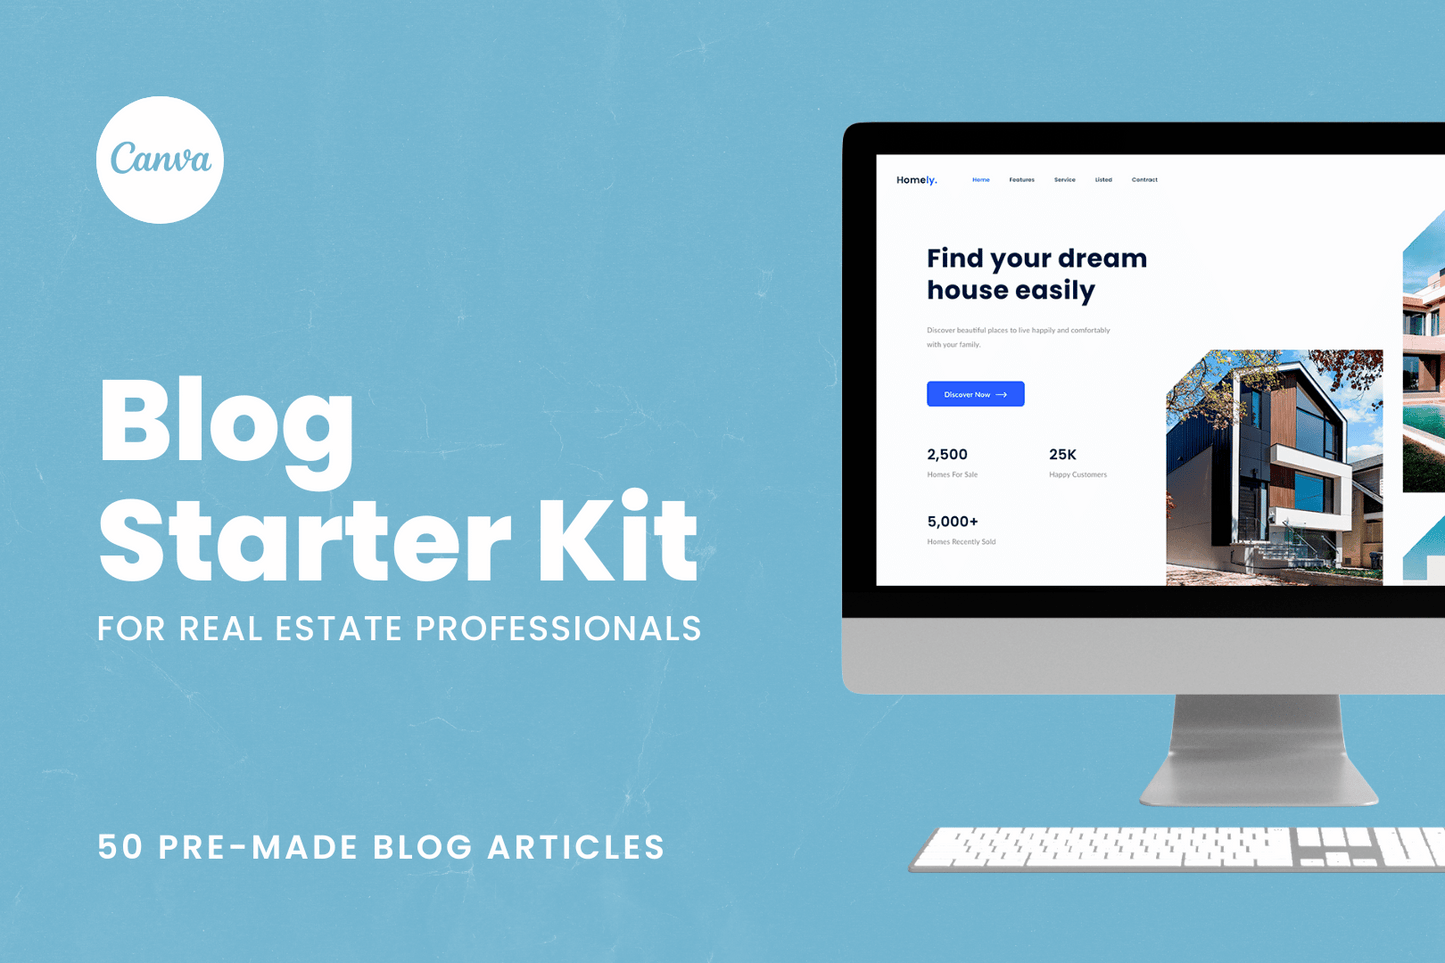 Blog Starter Kit for Real Estate Professionals